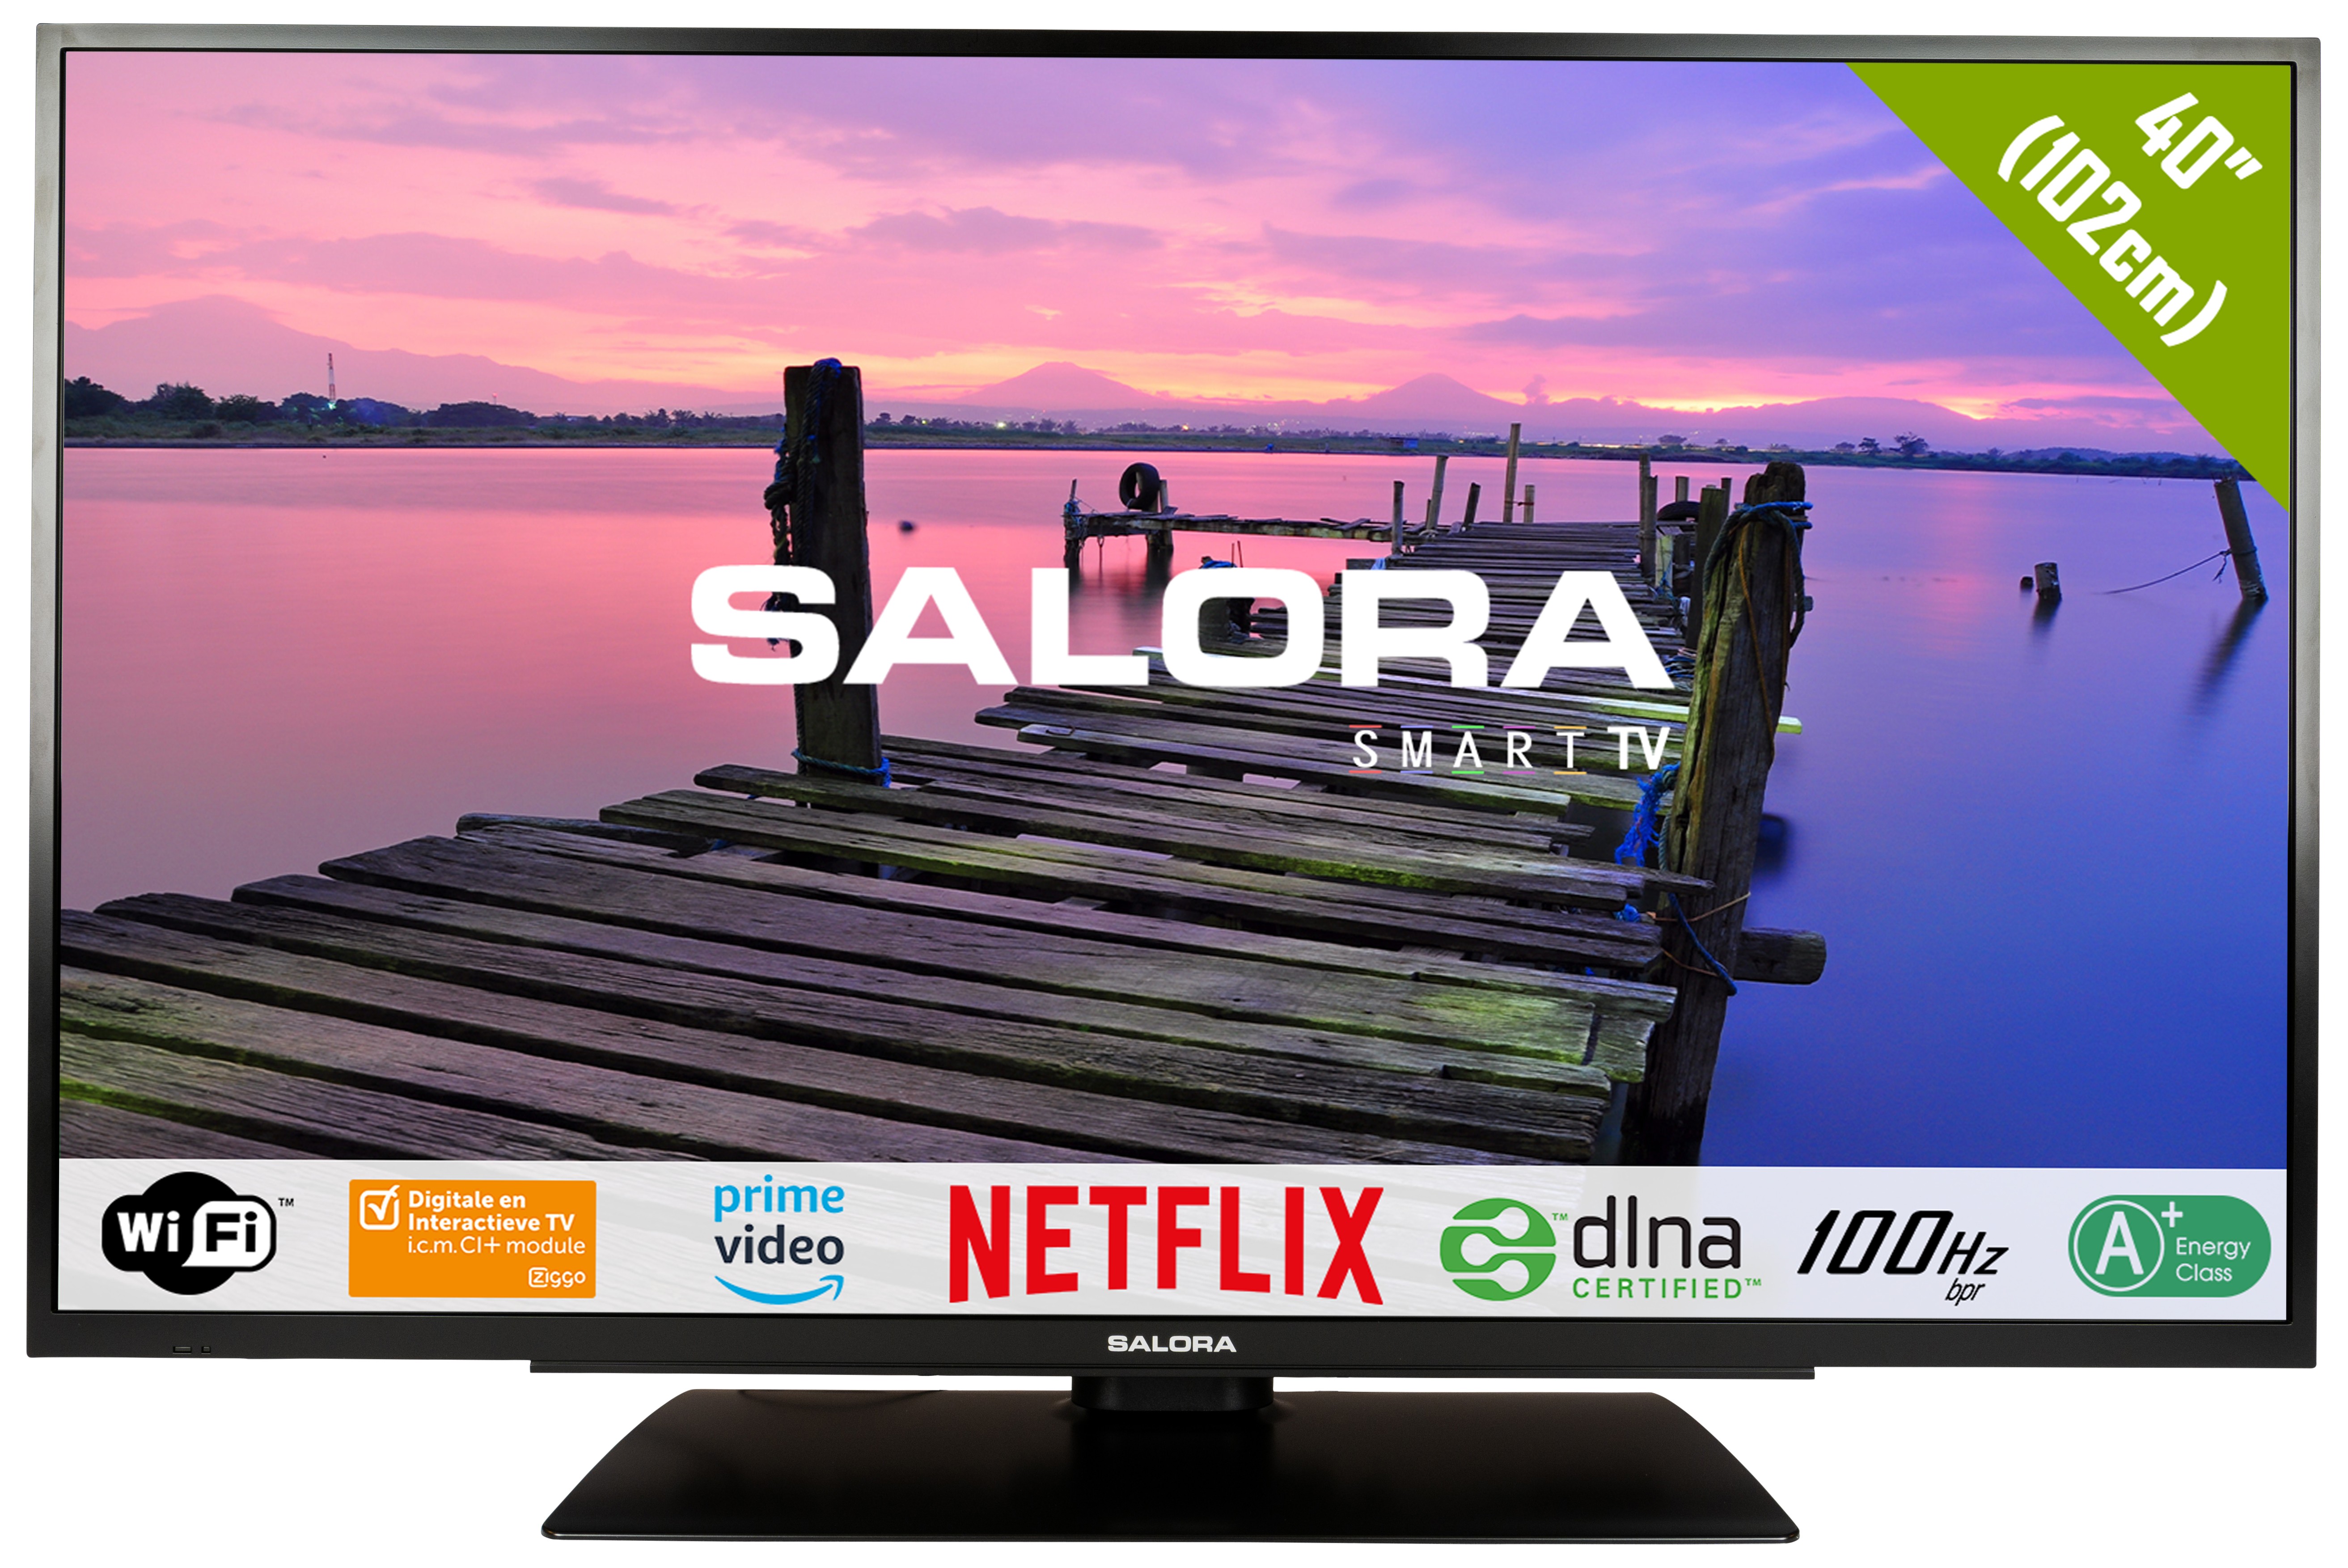 Salora 6500 Series 40fsb2704 Tv 101 6 Cm 40 Full Hd Smart Tv Wi Fi Black Tv Specifications